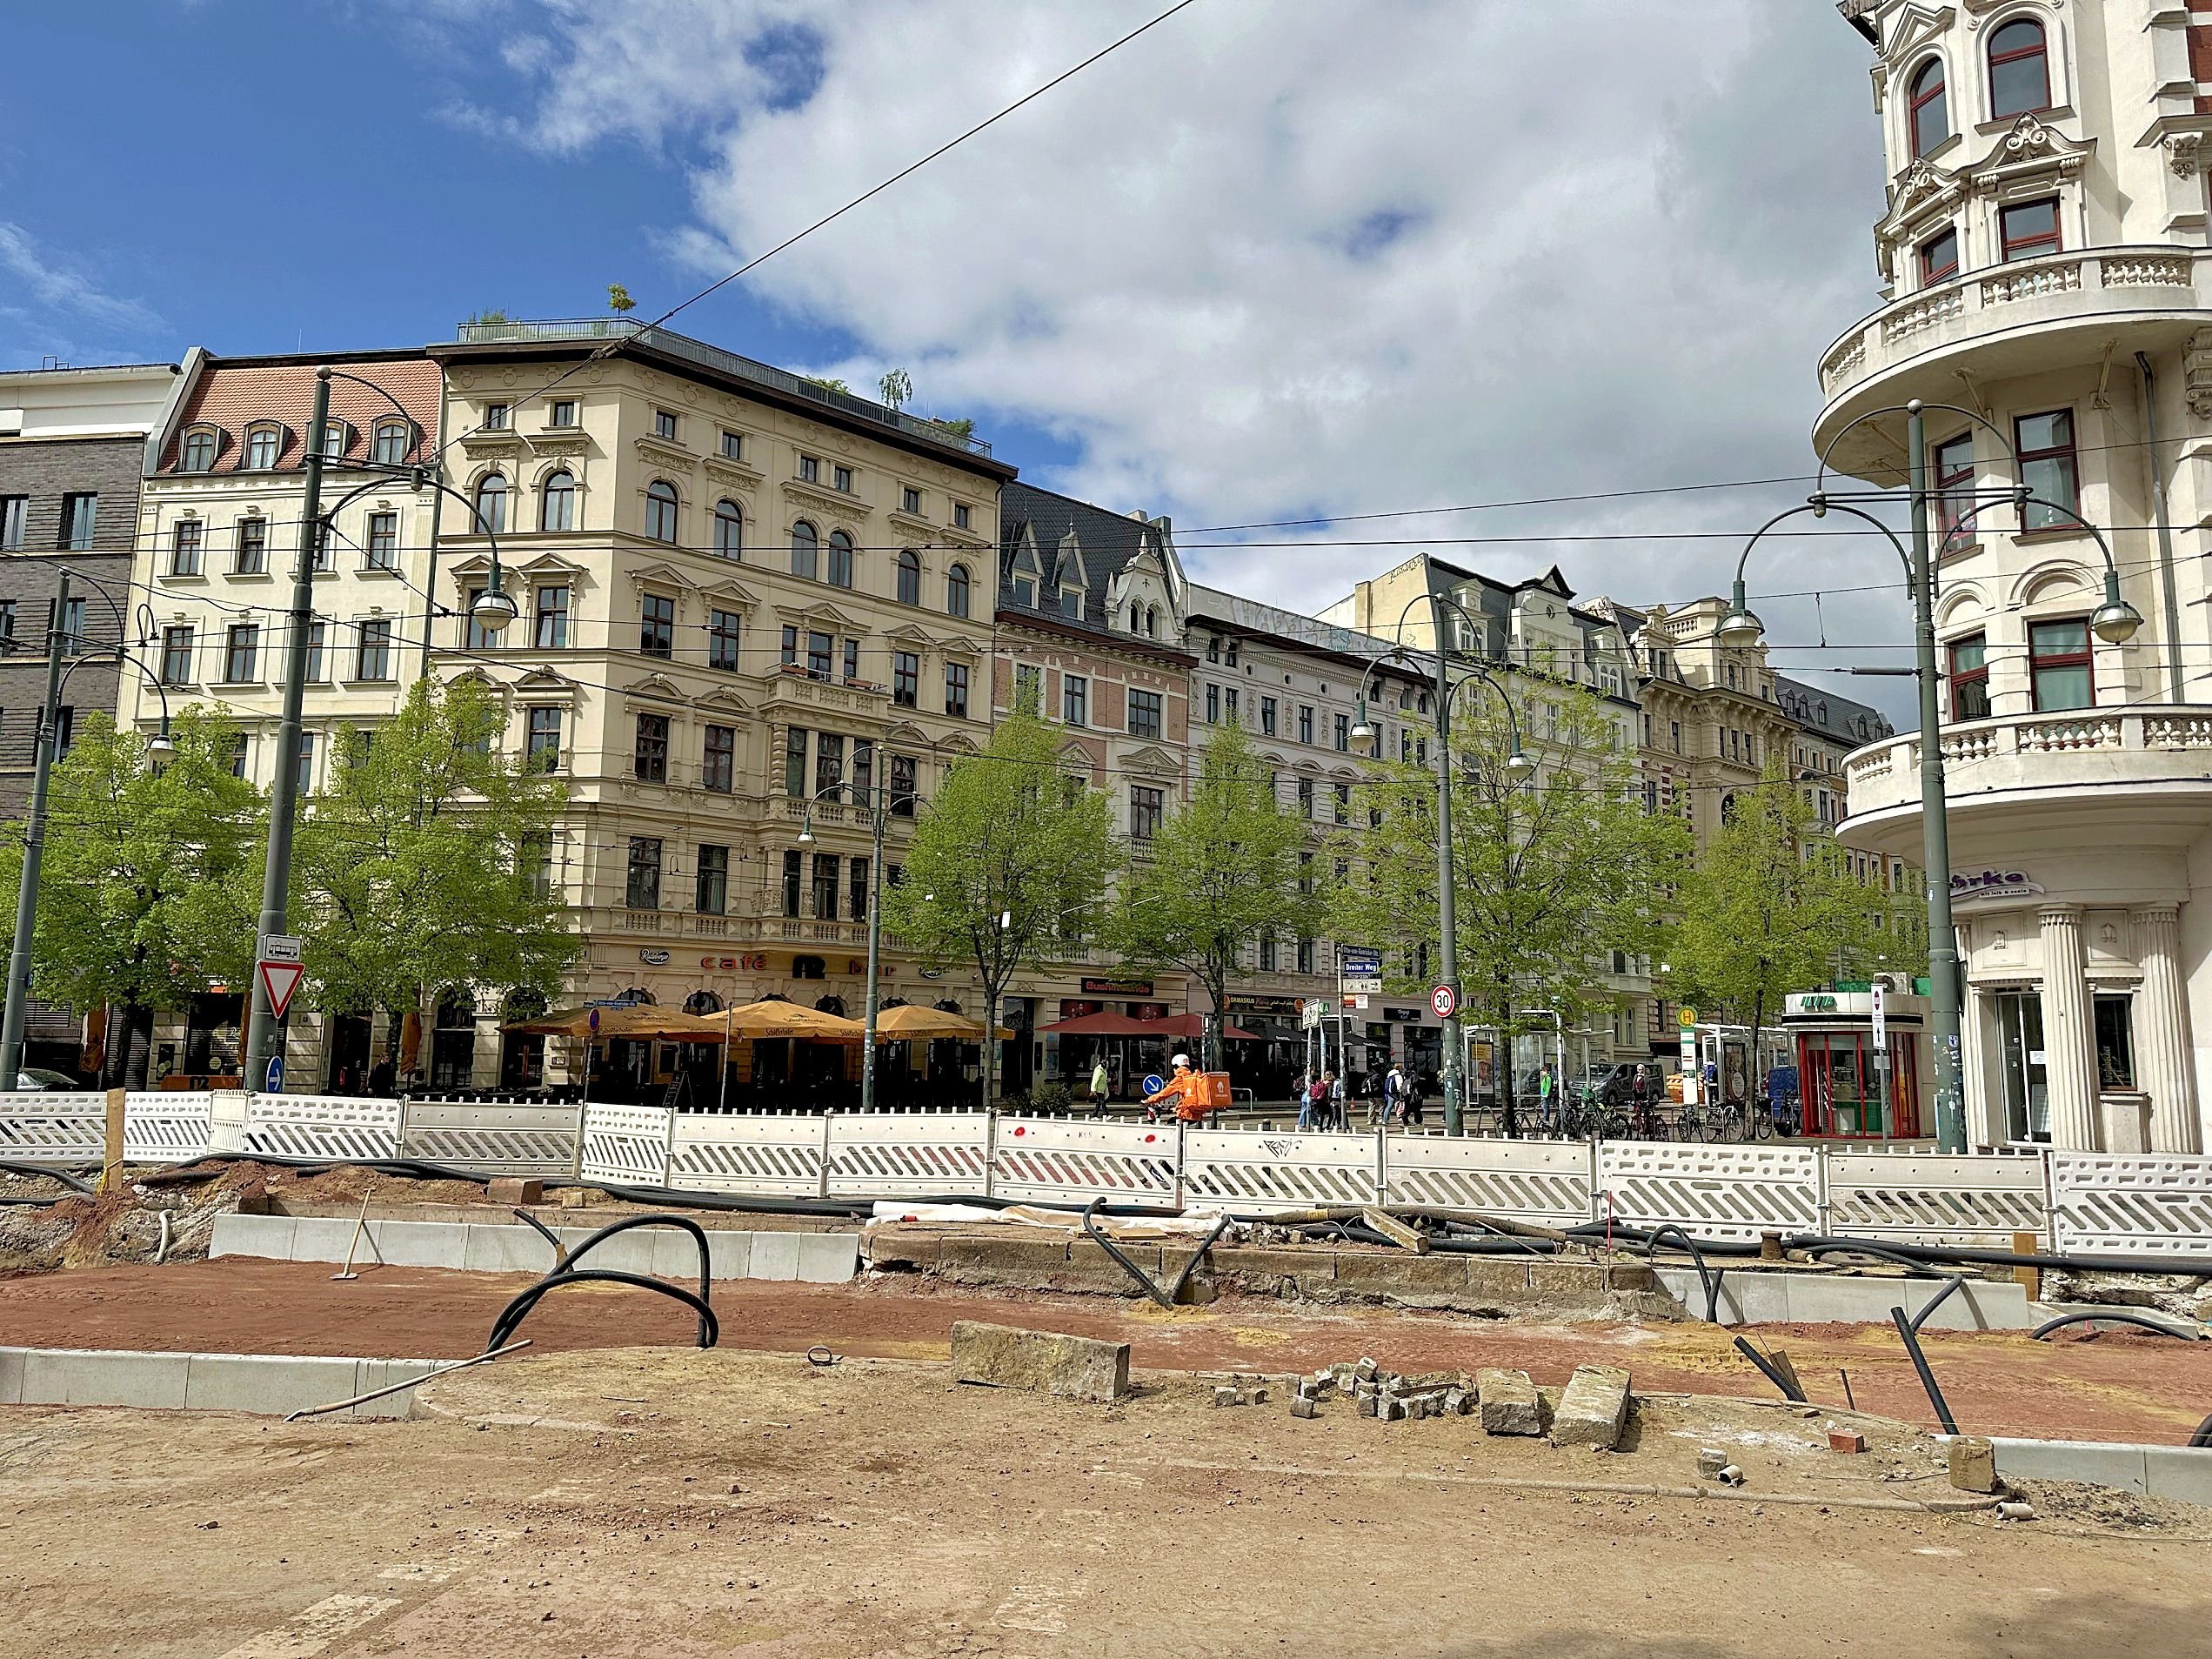 Gastronomie und ausgehen: Chancen nach der Großbaustelle: Wie der Hasselbachplatz in Magdeburg wieder pulsieren kann